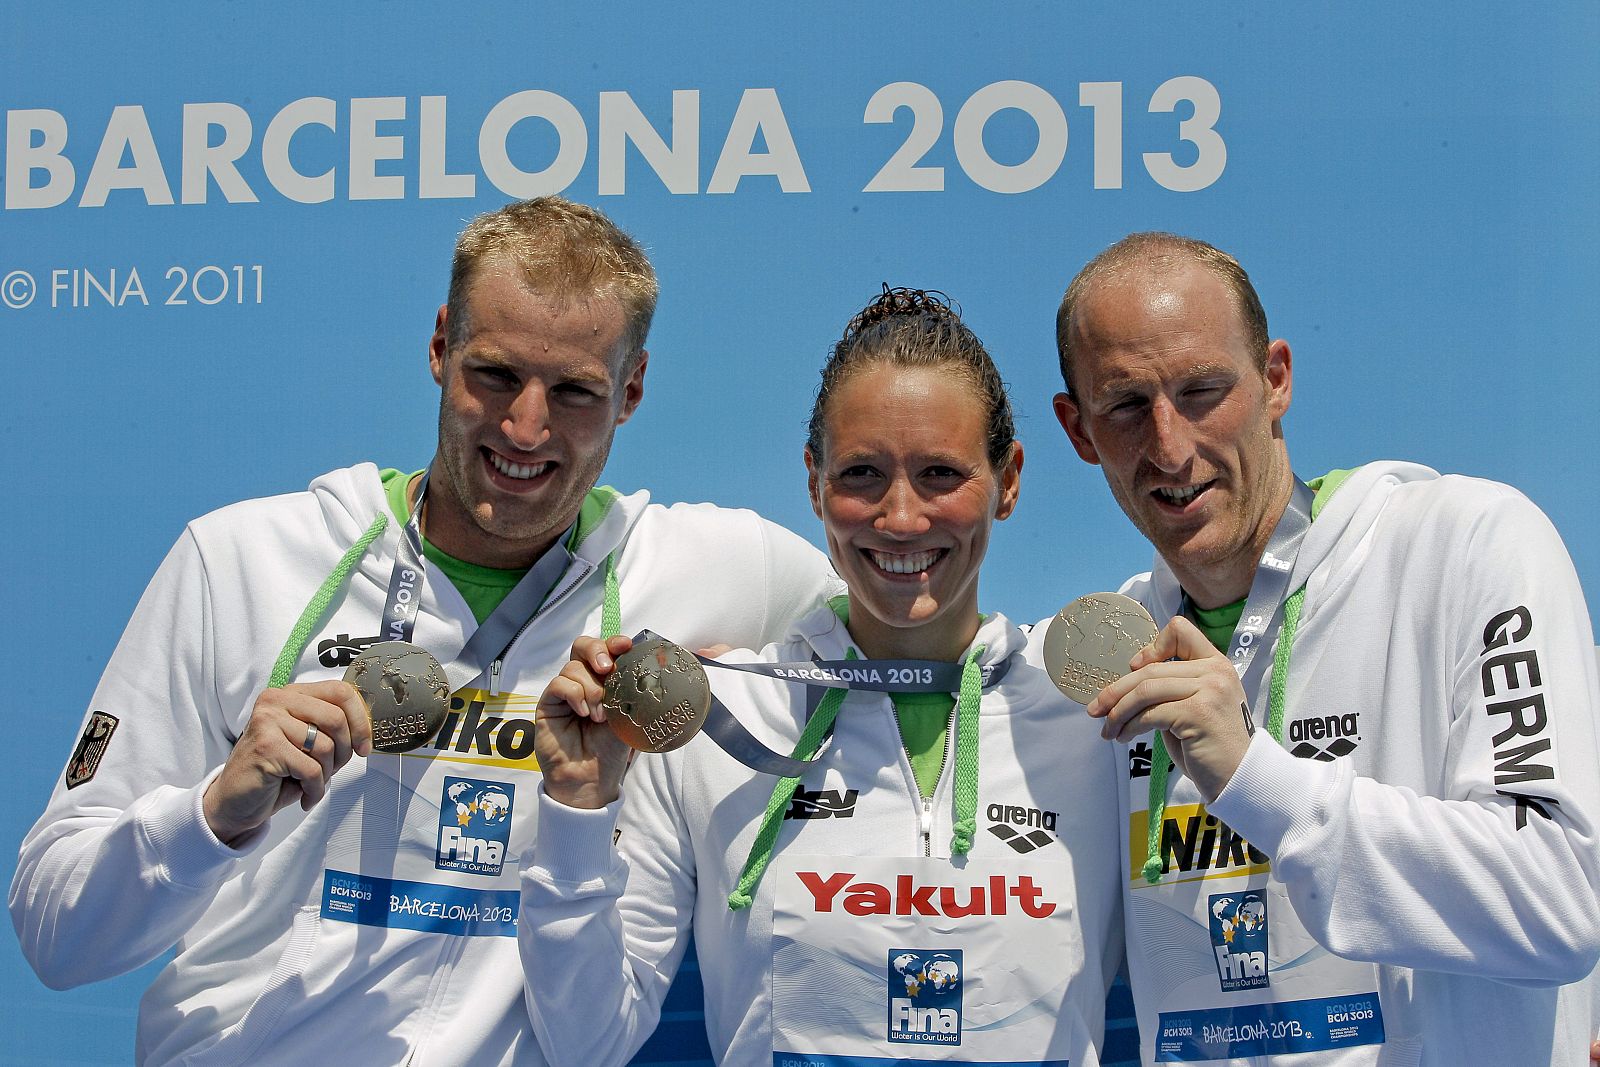 El equipo alemán formado por Christian Reichert, Isabelle Harle y Thomas Lurz, muestran la medalla de oro.